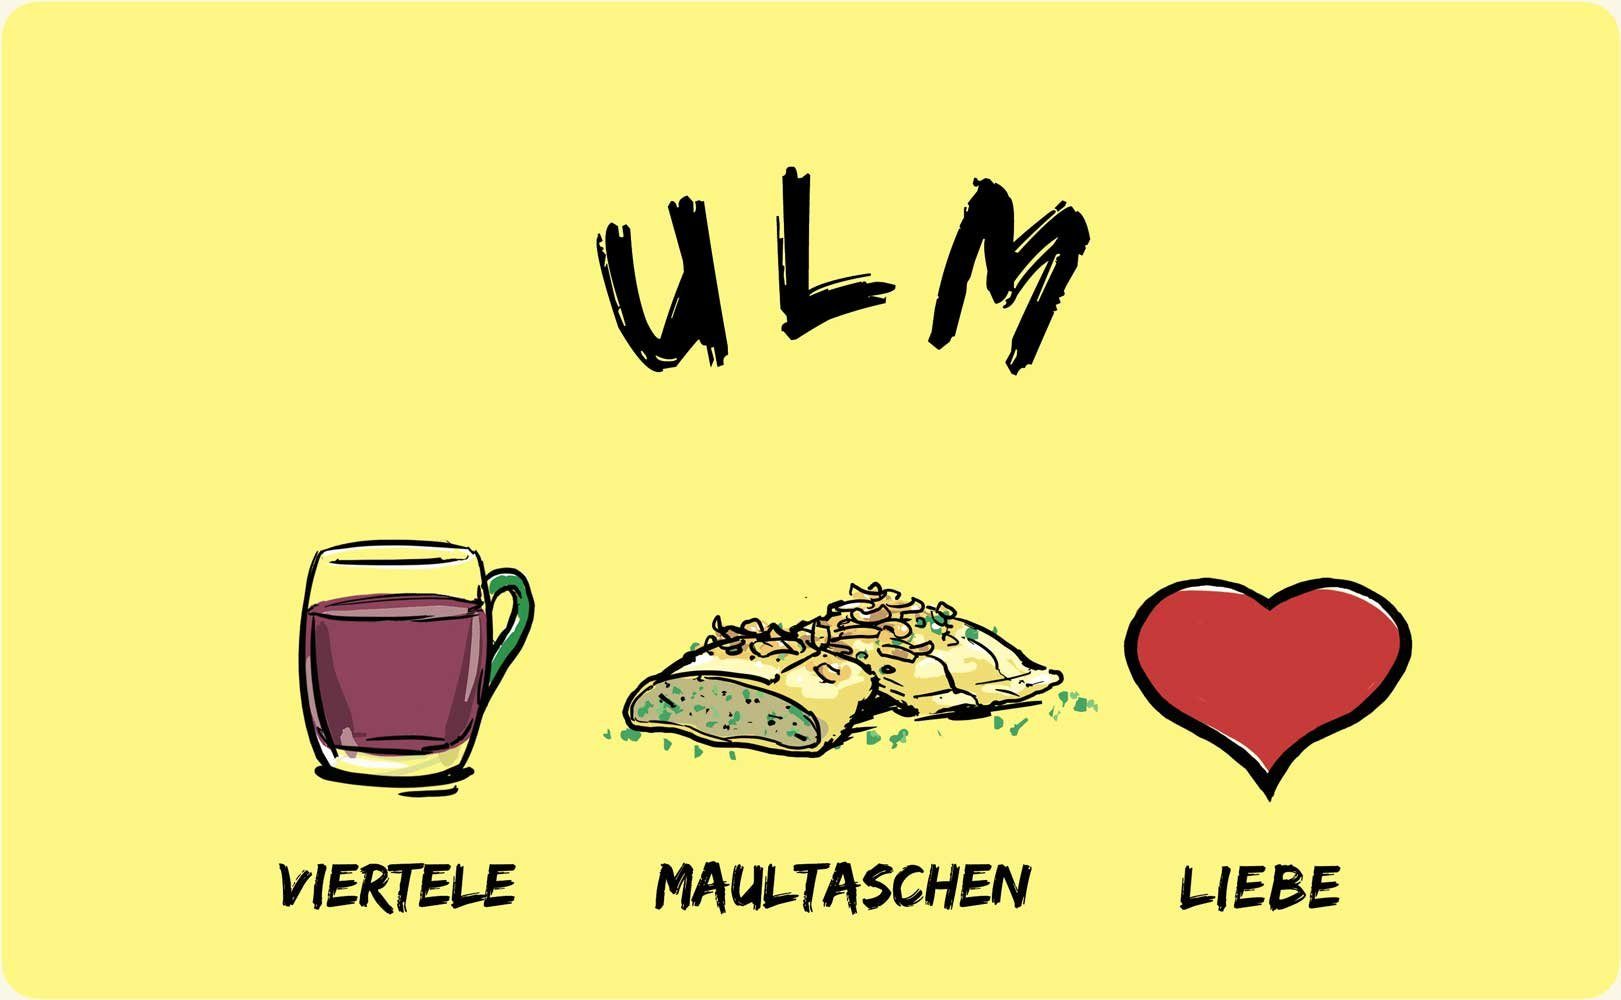 Stadtmeister die Melamin Viertele-Maultaschen-Liebe, Ulm: Frühstücksbrett